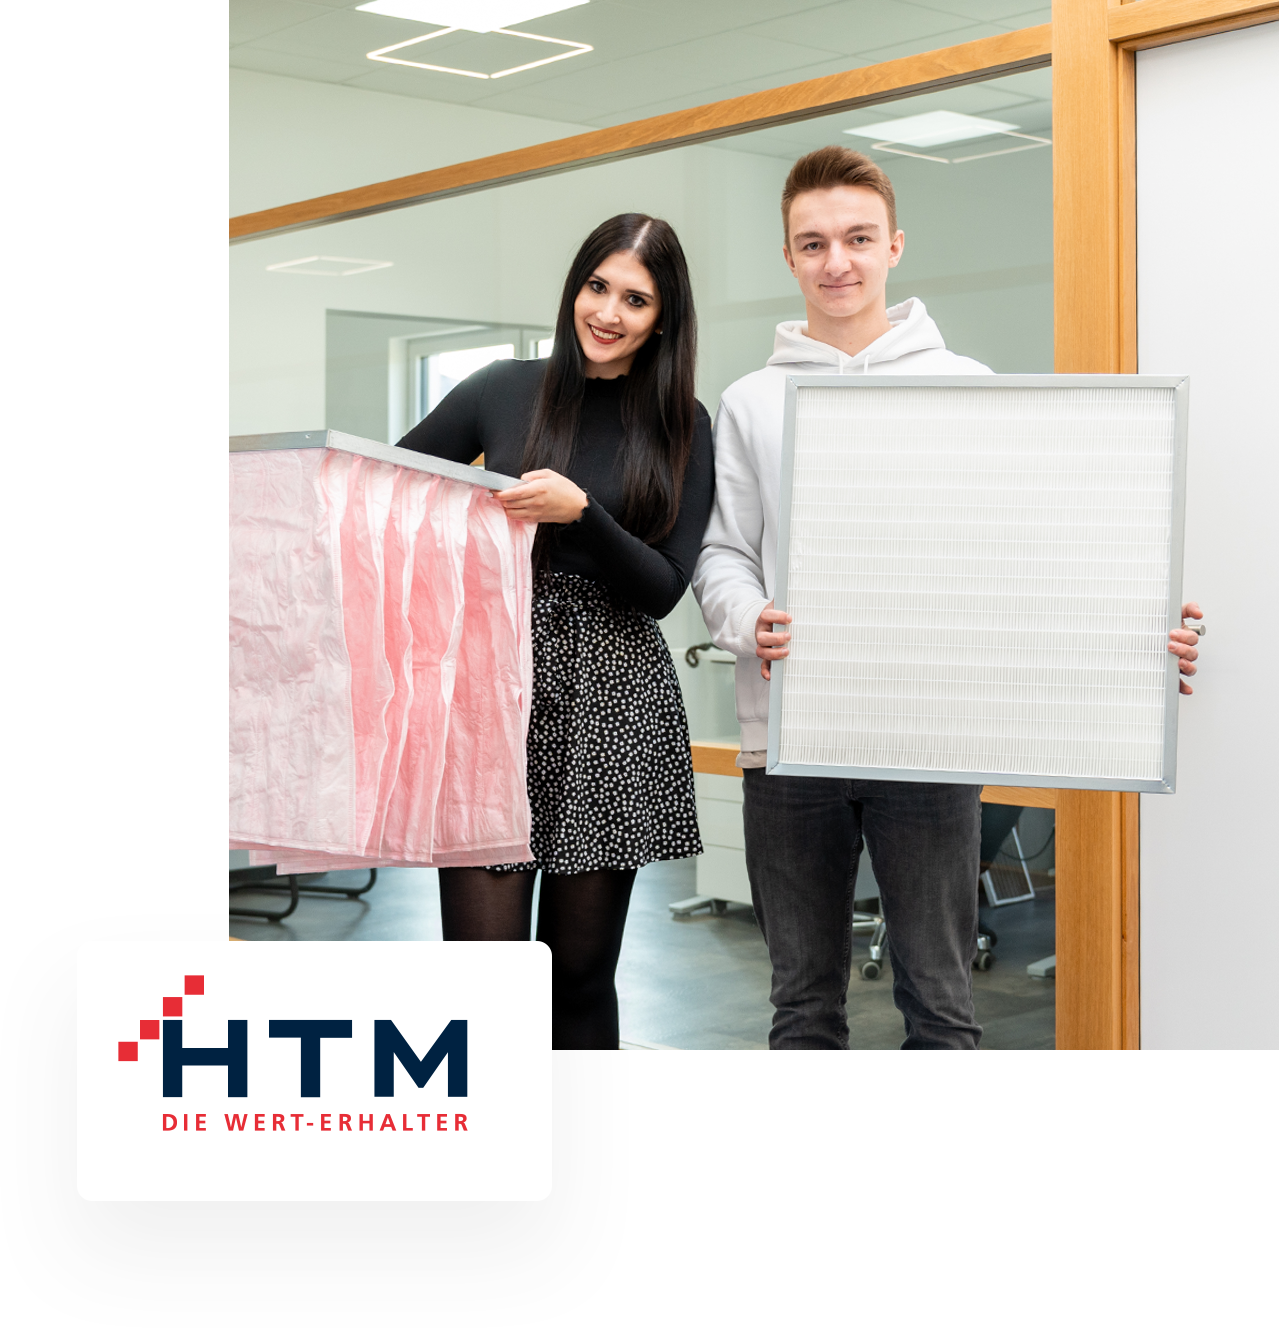 Der HTM SHOP ist ein Bestandteil der HTM GmbH & Co. KG – die Spezialisten im Bereich Wartung, Kundendienst und Optimierung von Gebäudetechnischen Anlagen.